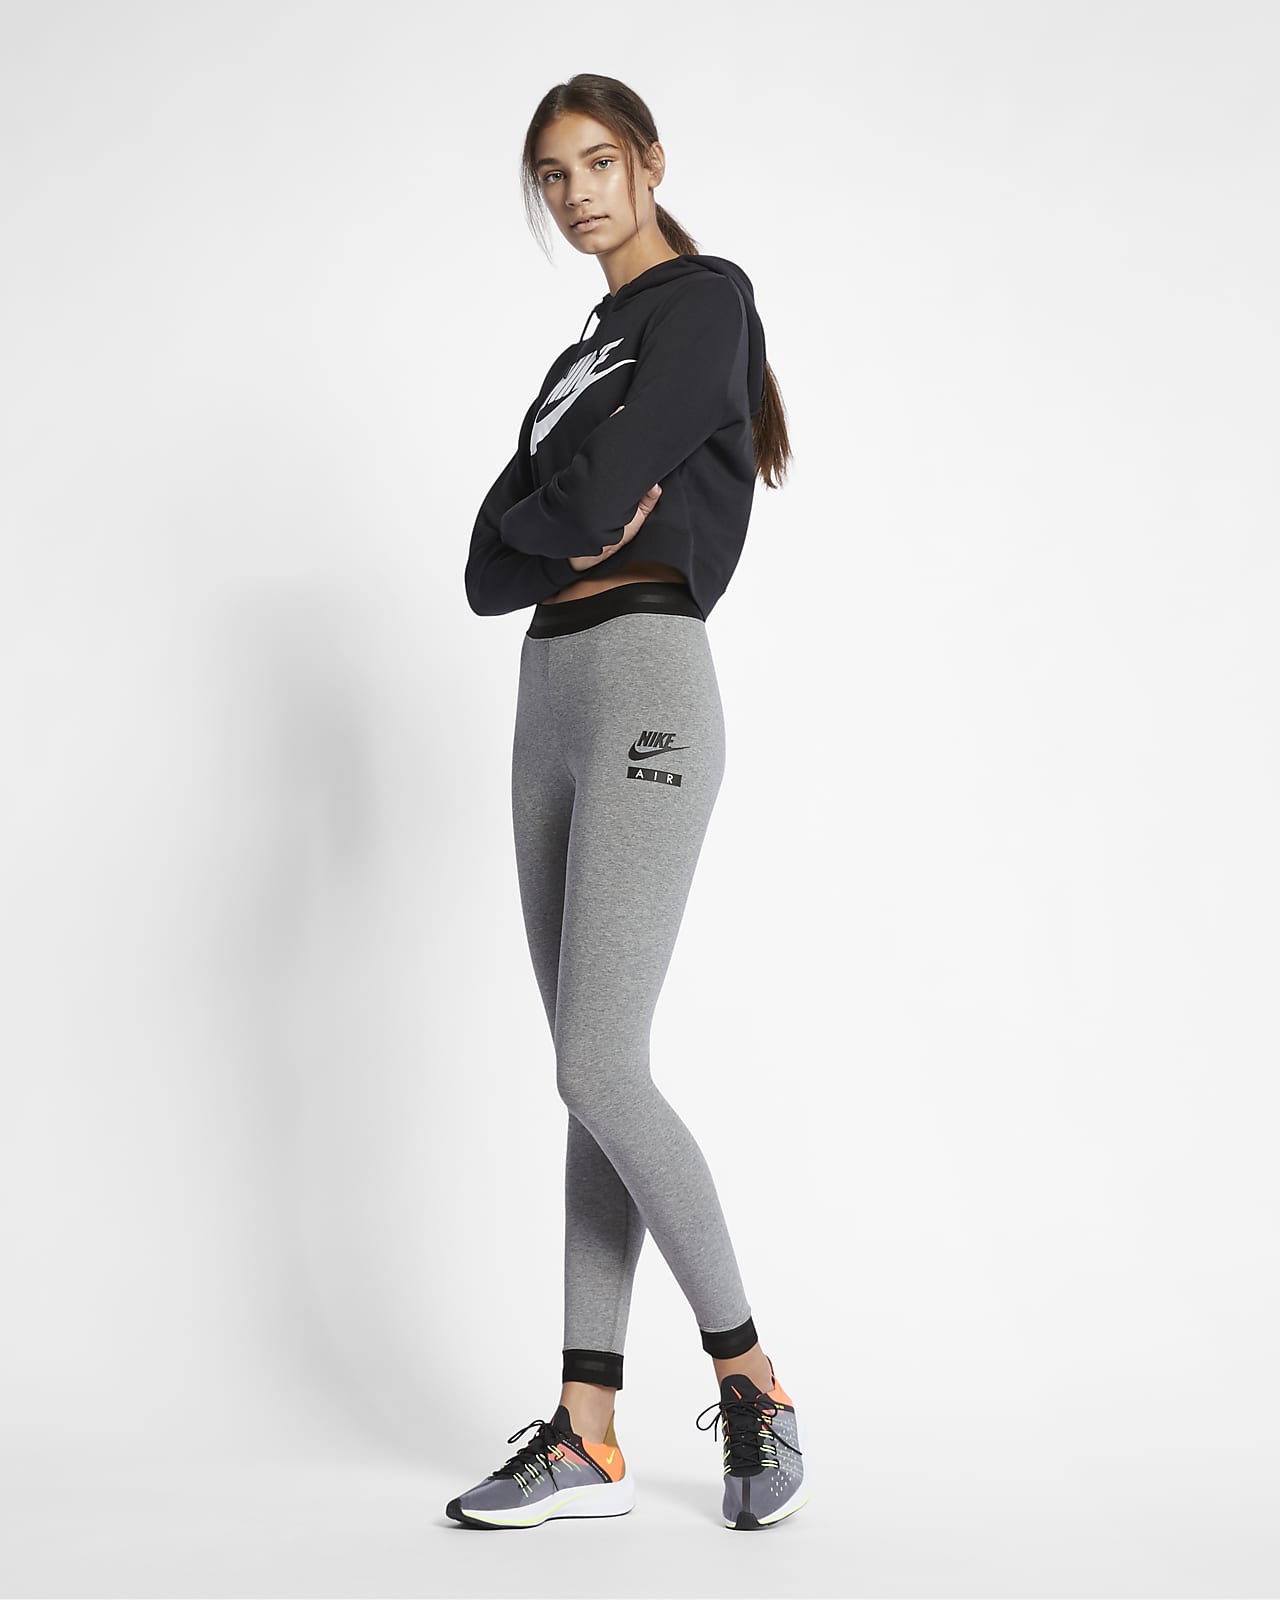 Women's High-Waisted Leggings. Nike CH